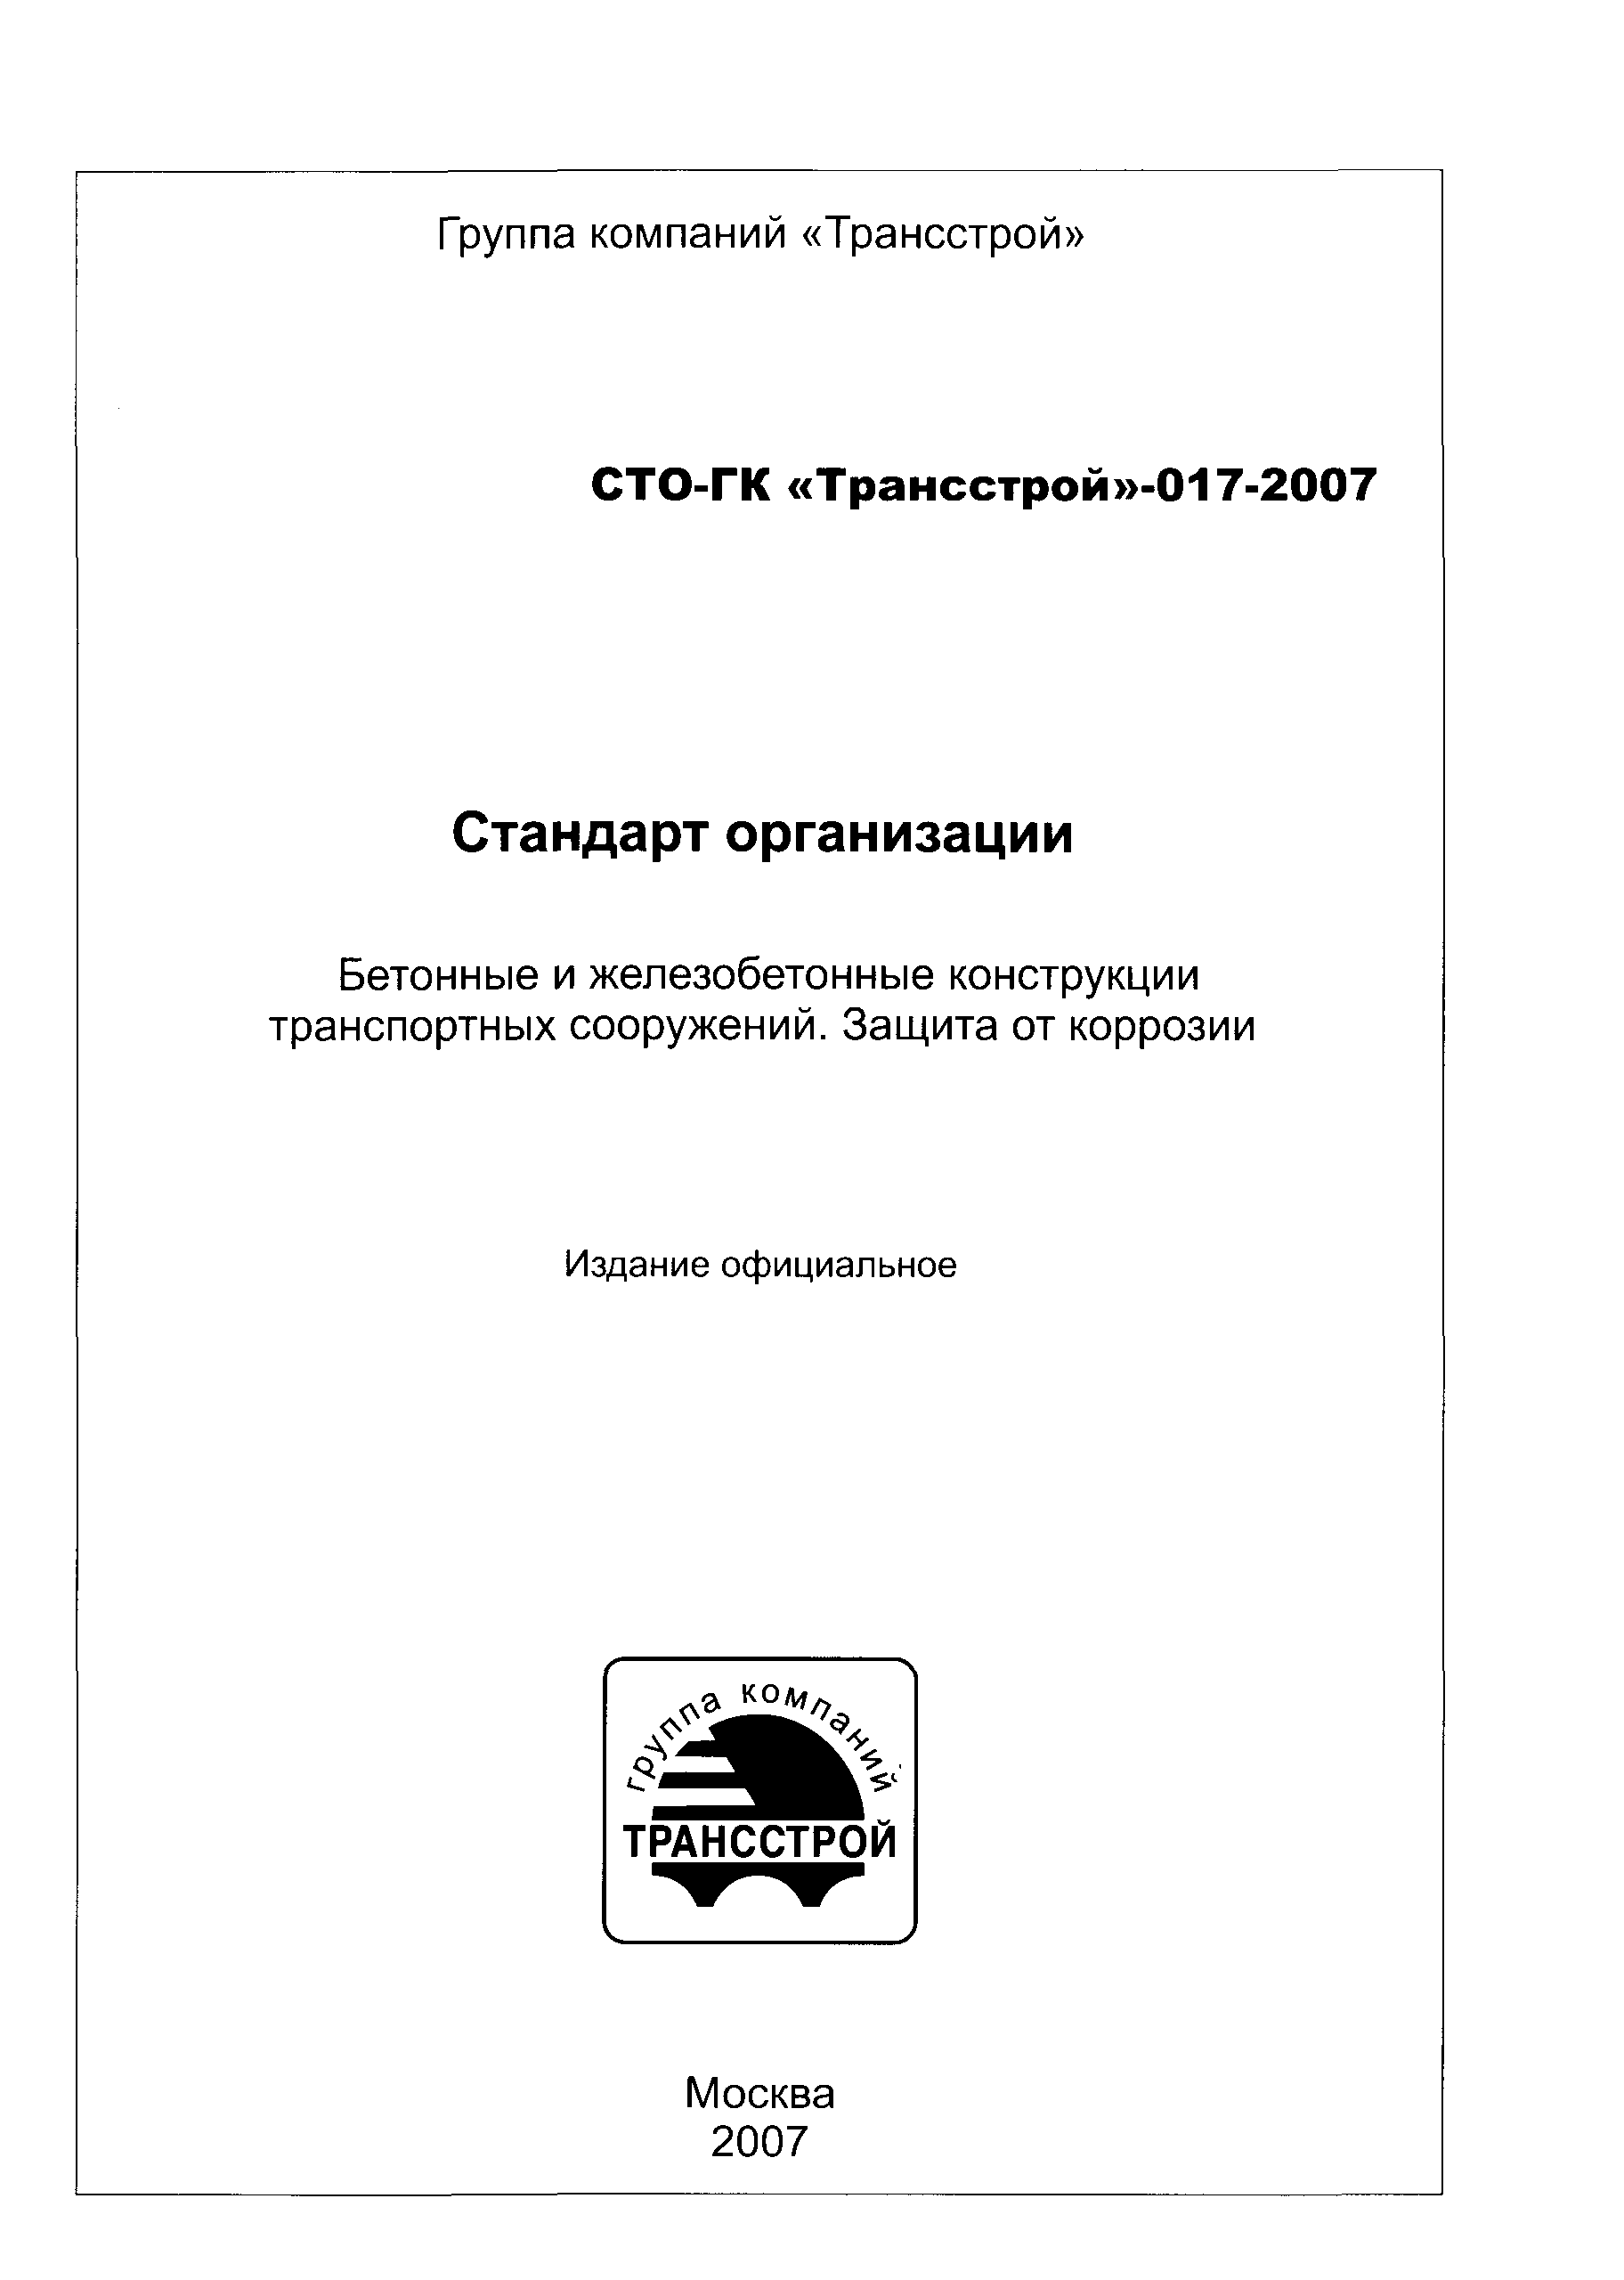 СТО-ГК "Трансстрой" 017-2007